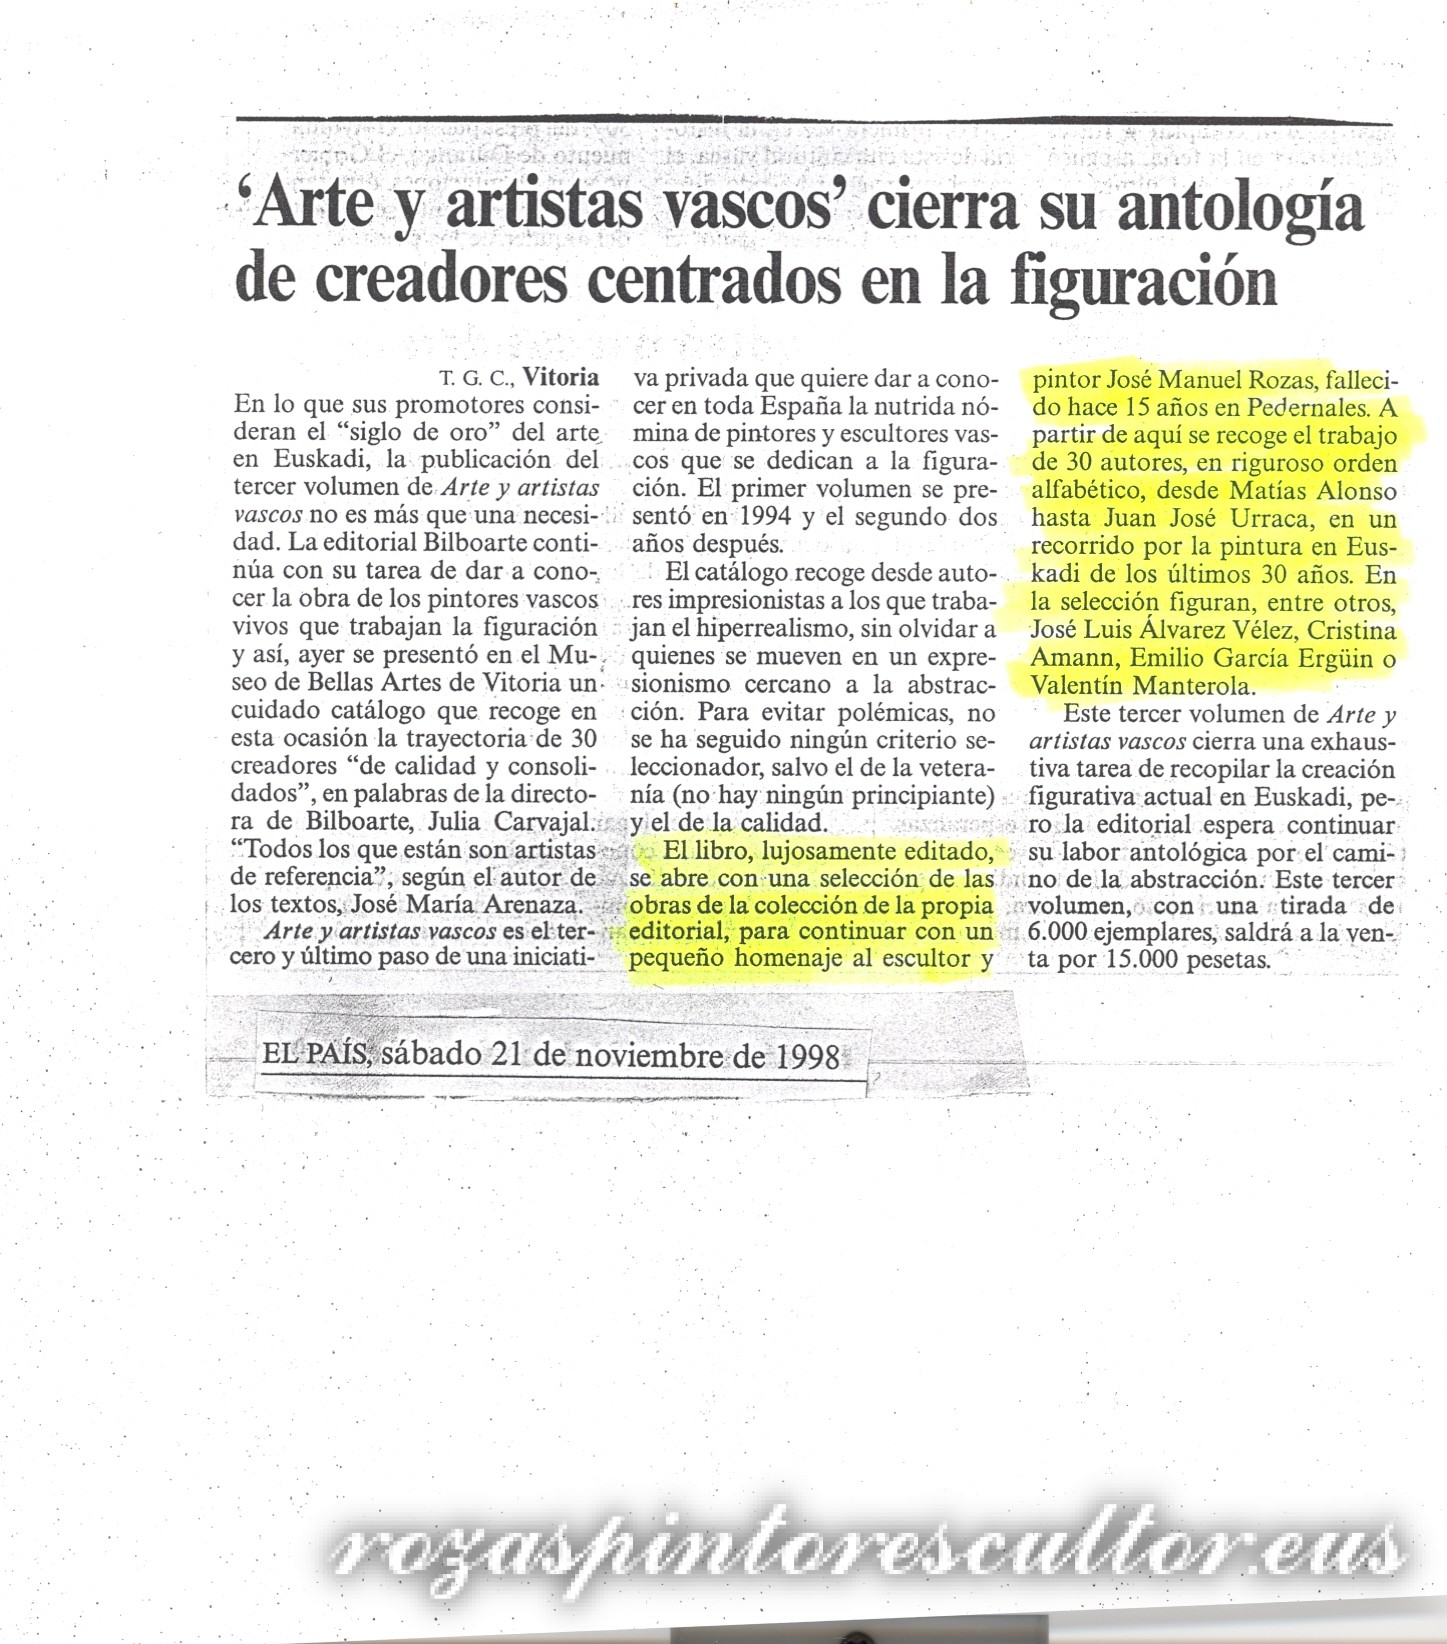 1998 El País – “Art and Basque artists”